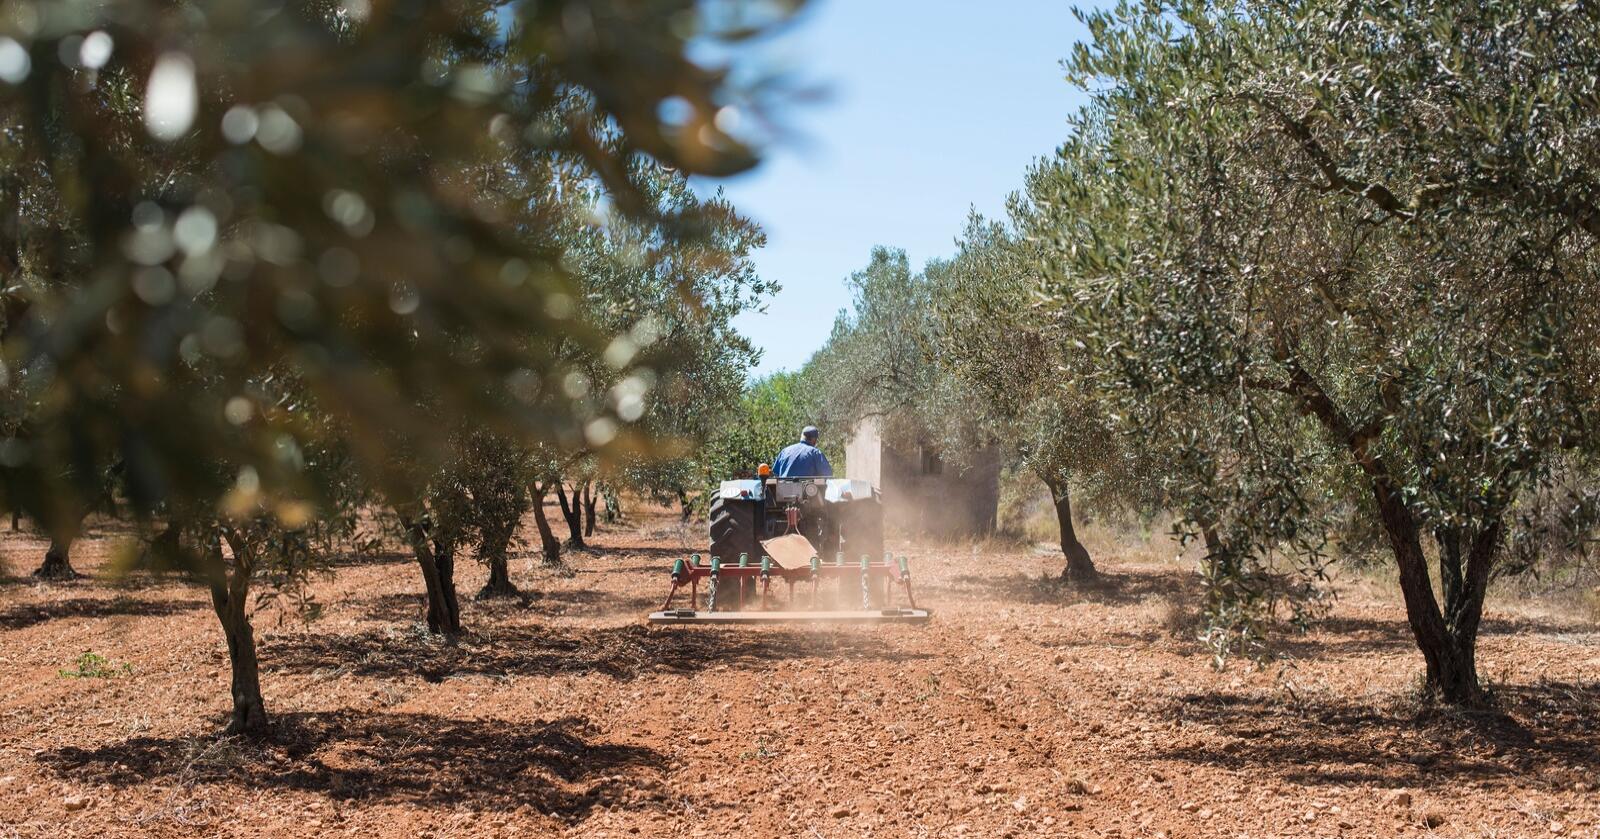 Tørke: Det går mot sterkt reduserte olivenavlinger i Spania, selv på områder med tilgang til kunstig vanning . Foto: Deyan Georgiev/Mostphotos